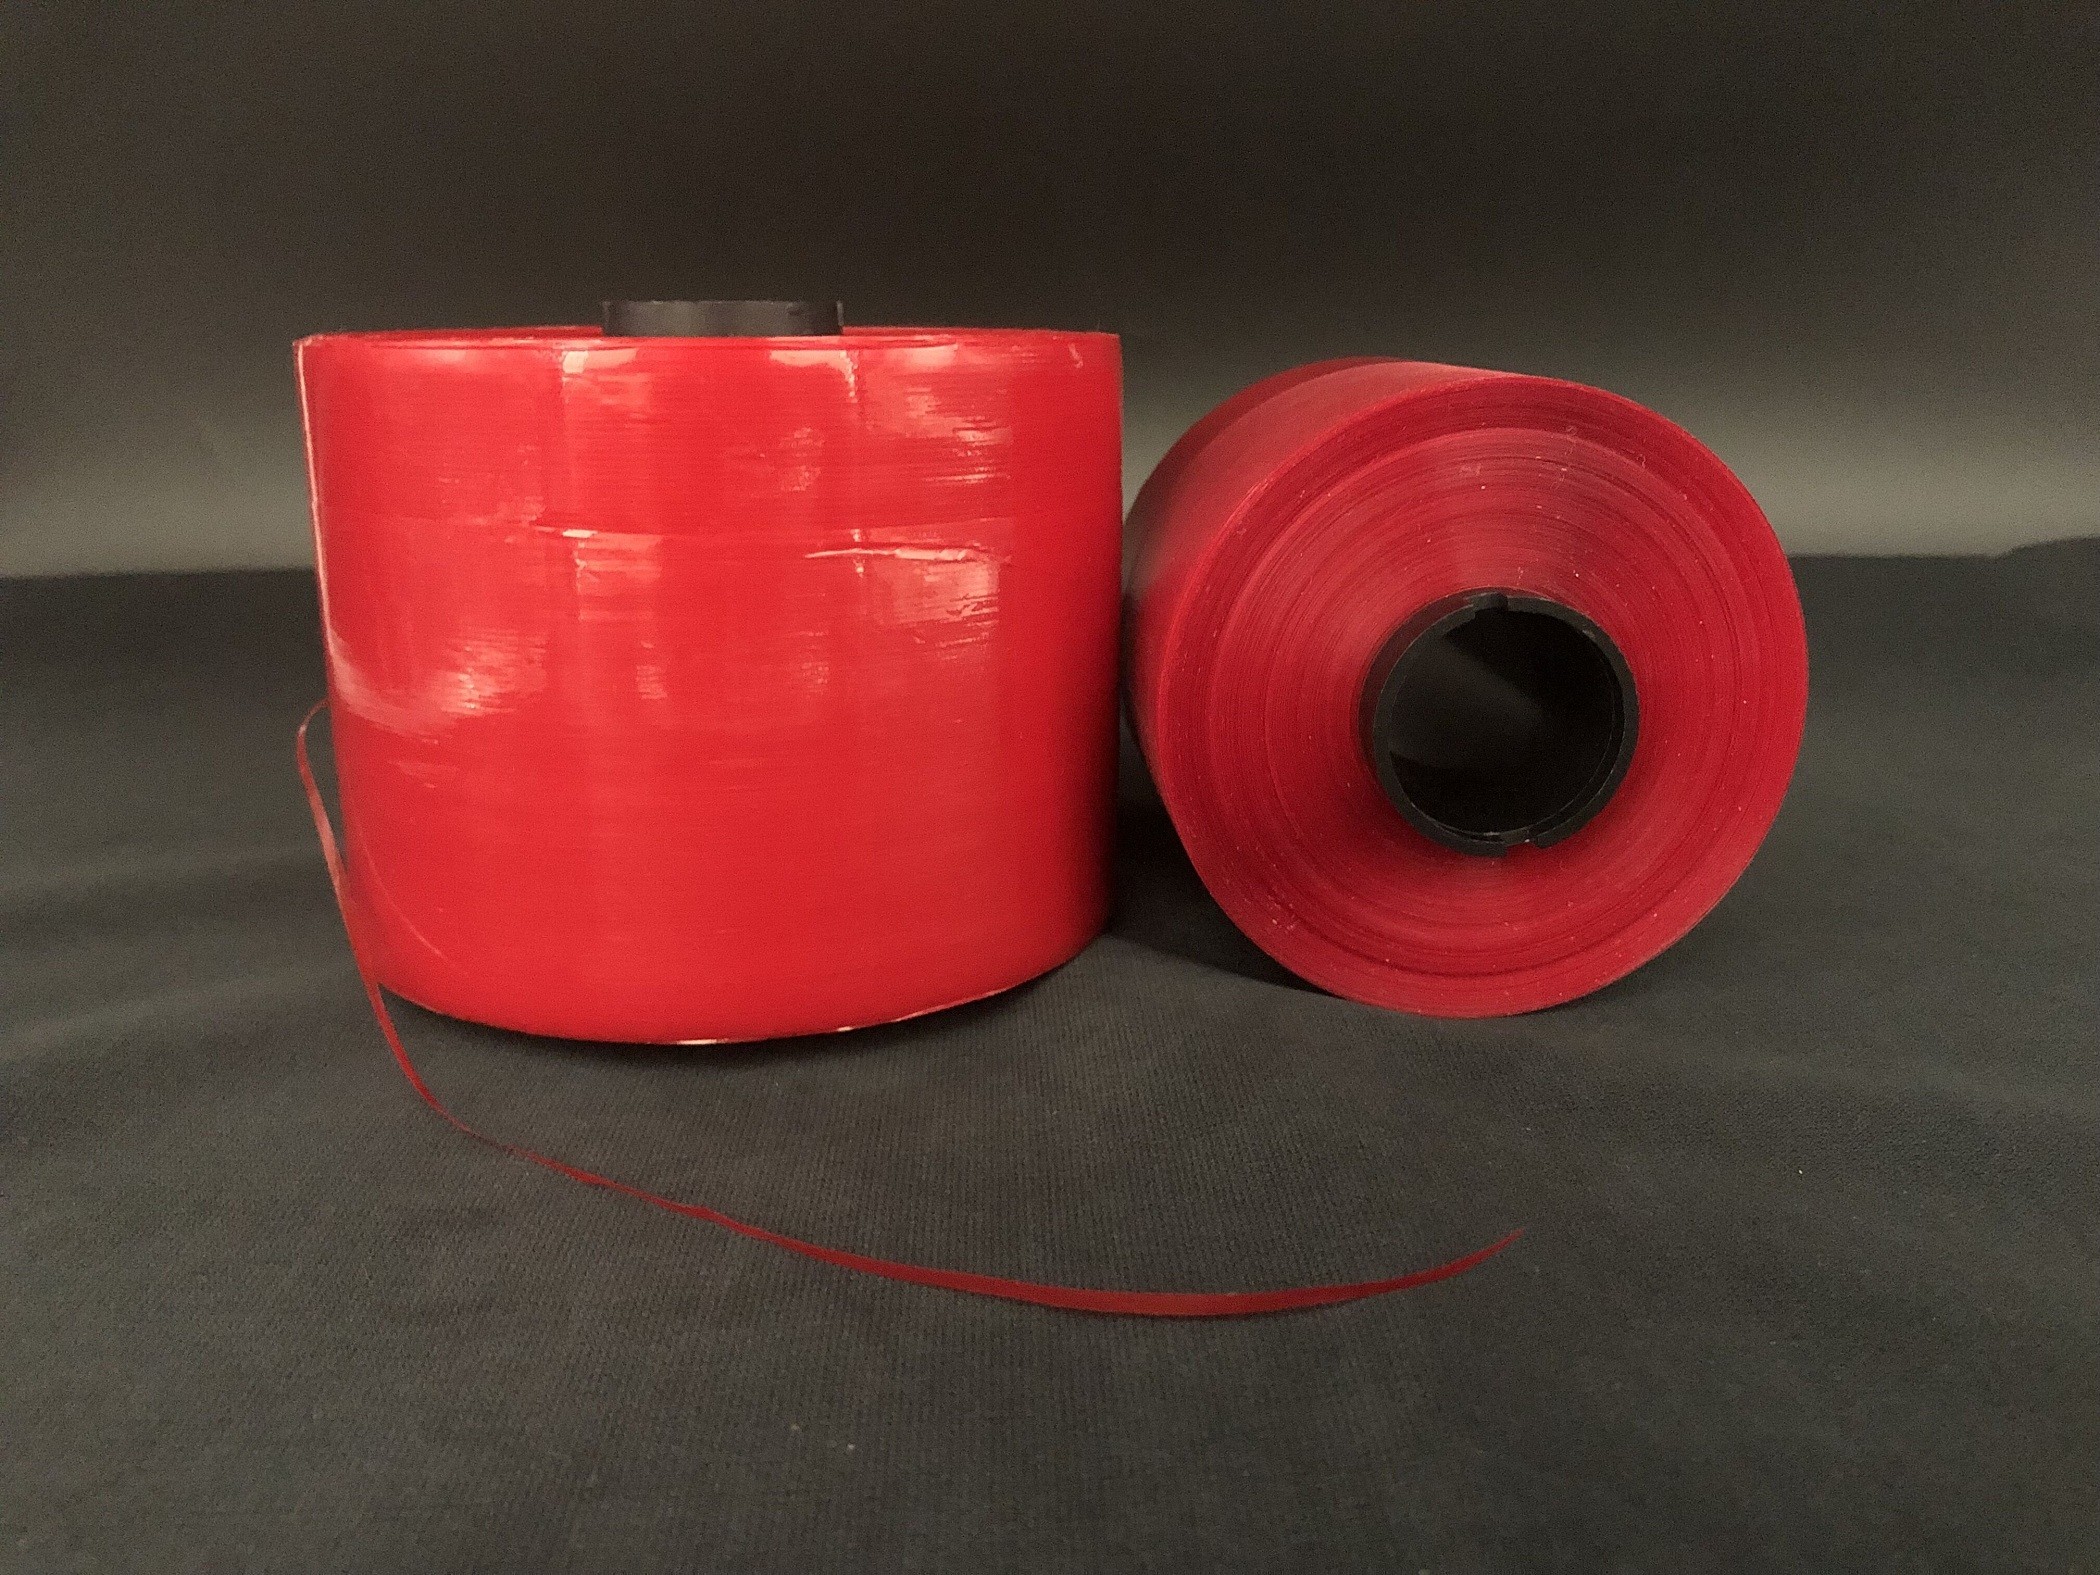 5mm Jumbo Rolls samoprzylepna taśma bezpieczeństwa z czerwoną łezką do pakowania toreb papierowych Dhl i otwierania